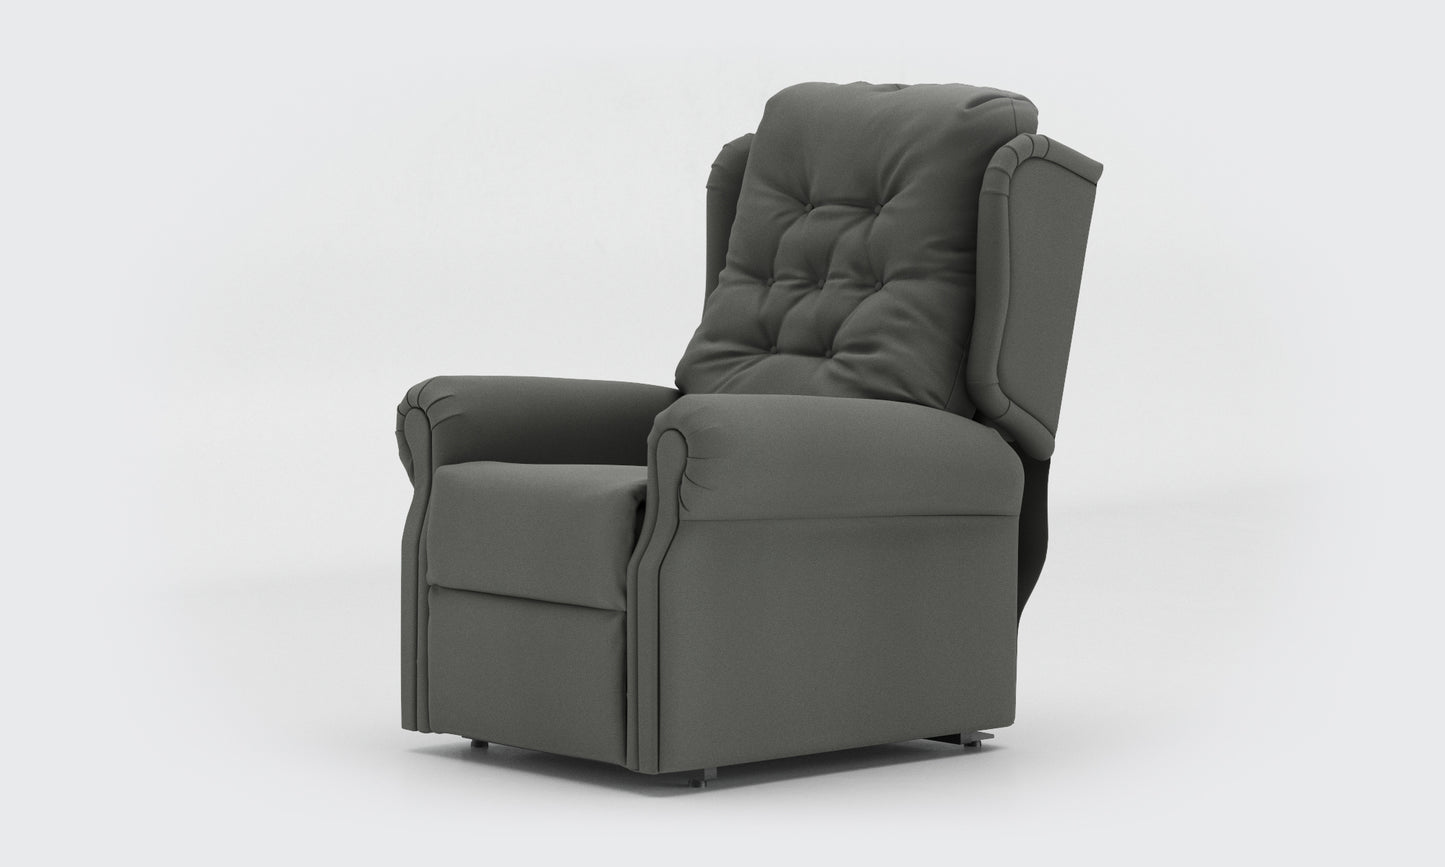 Adara Riser Recliner Chair standard buttons leather lichtgrau